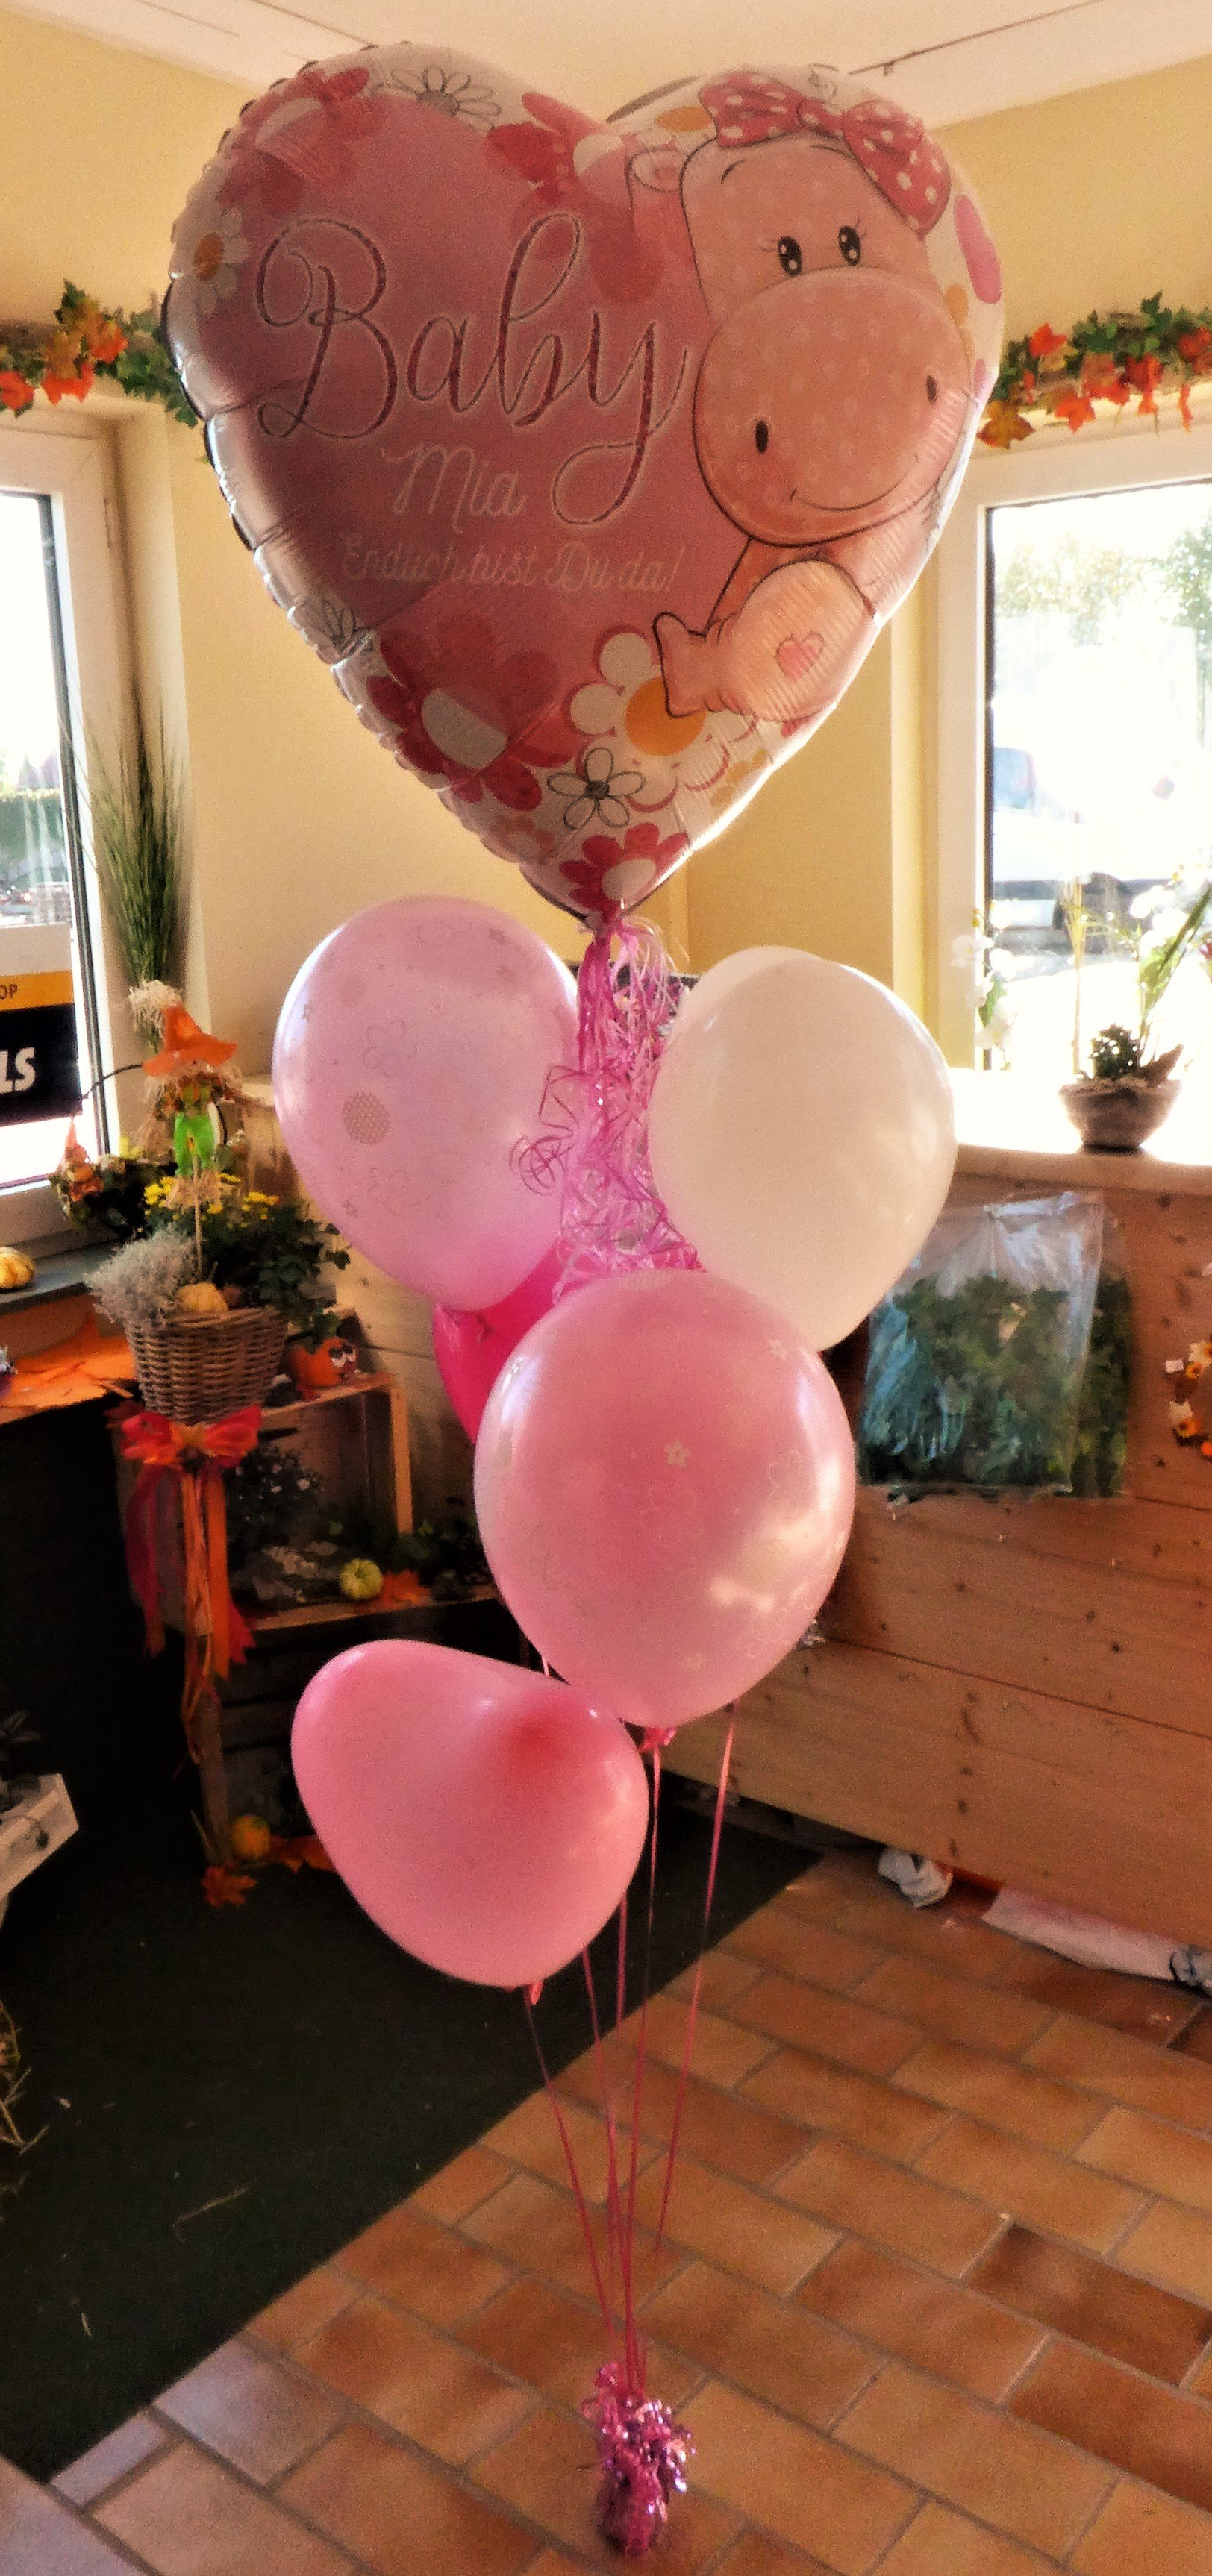 Babyballon, Folienballon, Folienballon Worms, Folienballon Herz, Folienballon zur Geburt